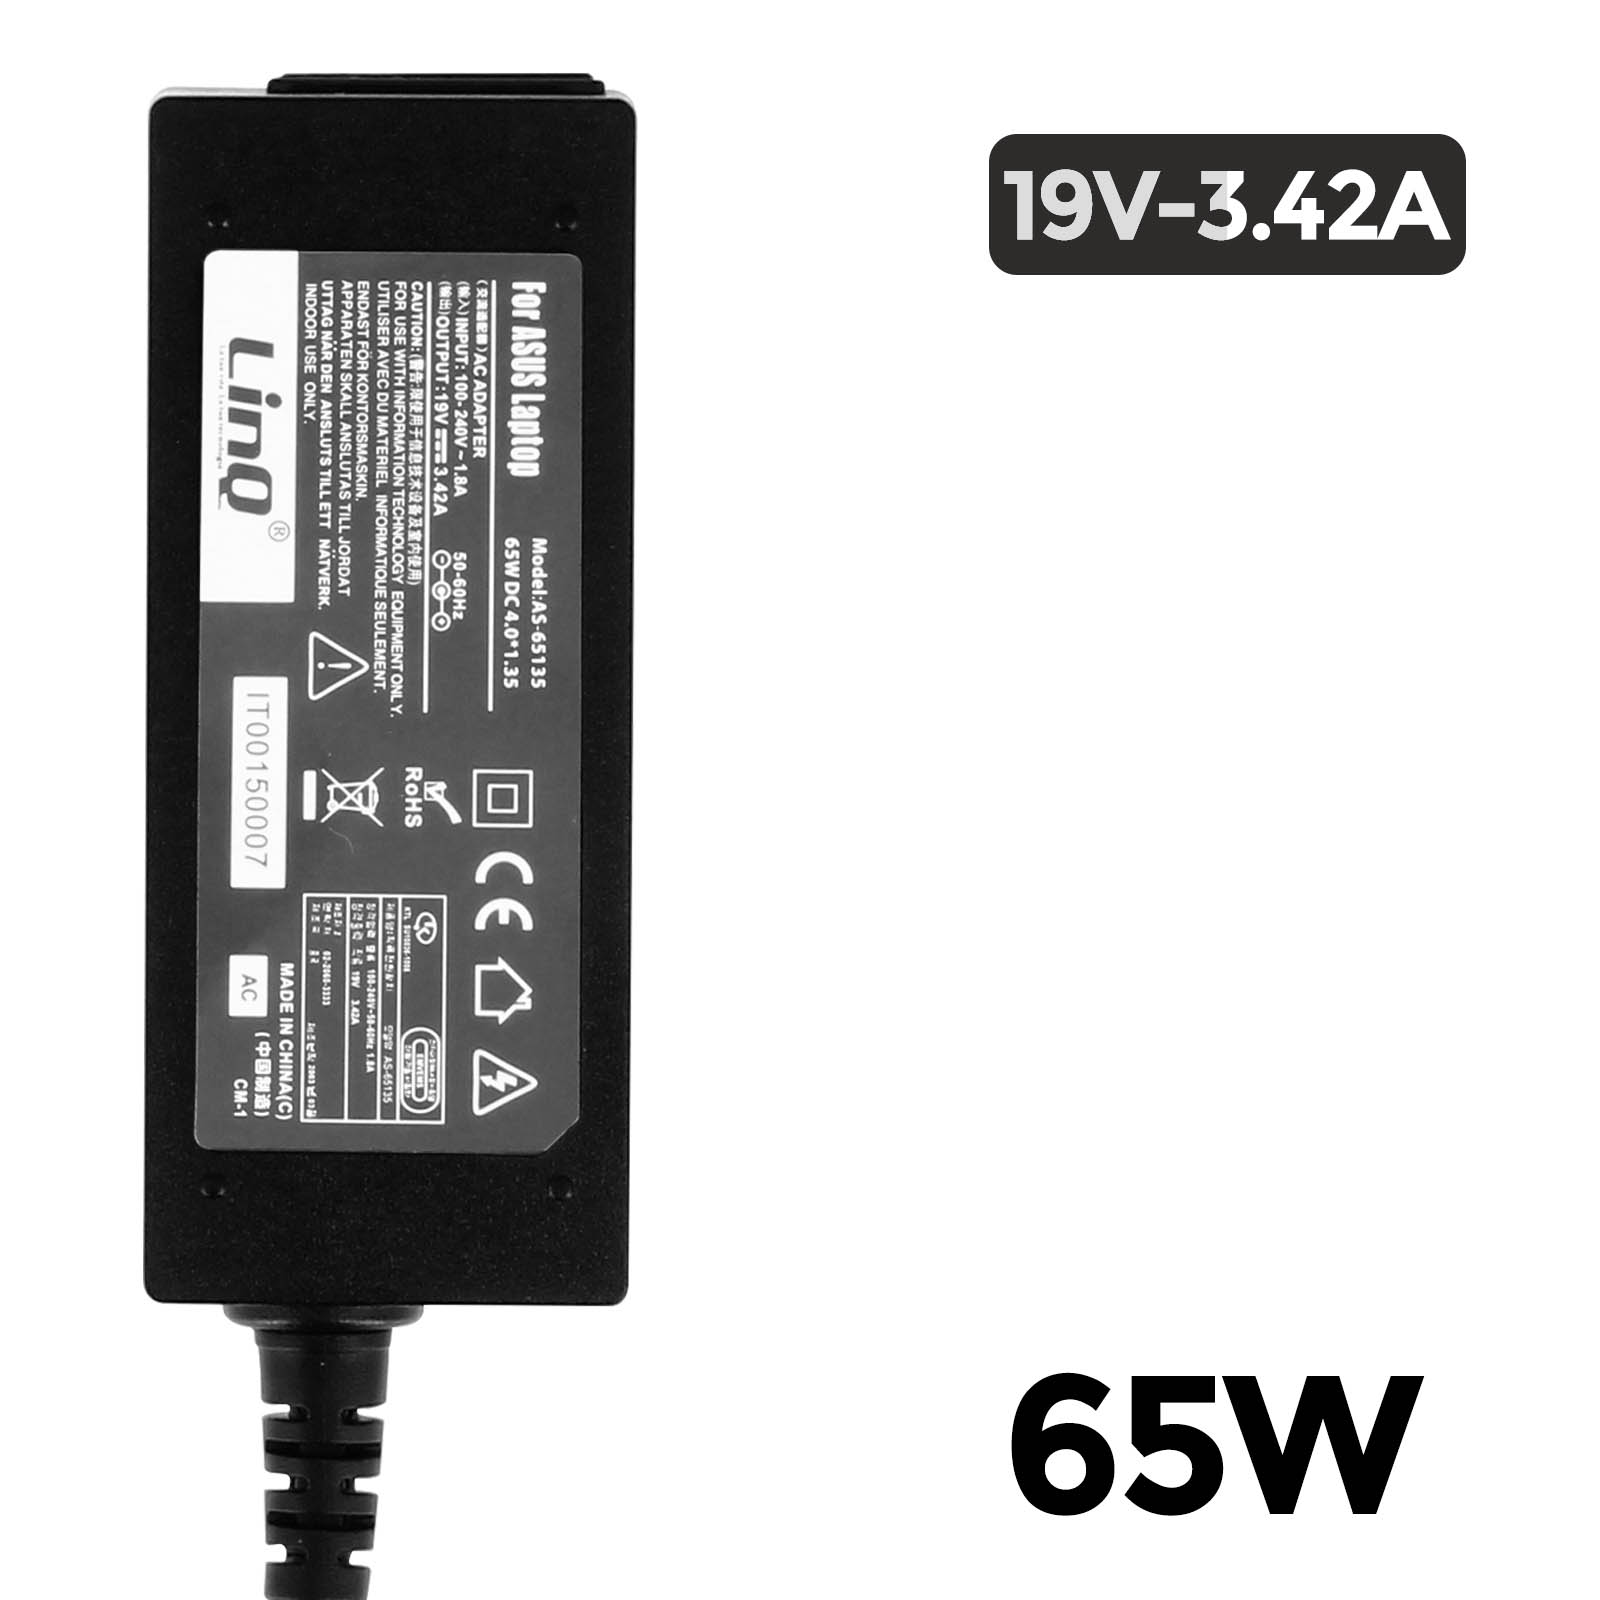 LINQ AS65135 Universal, Schwarz Wand-Ladegerät Netzteil, PC-Ladegerät 3.42A